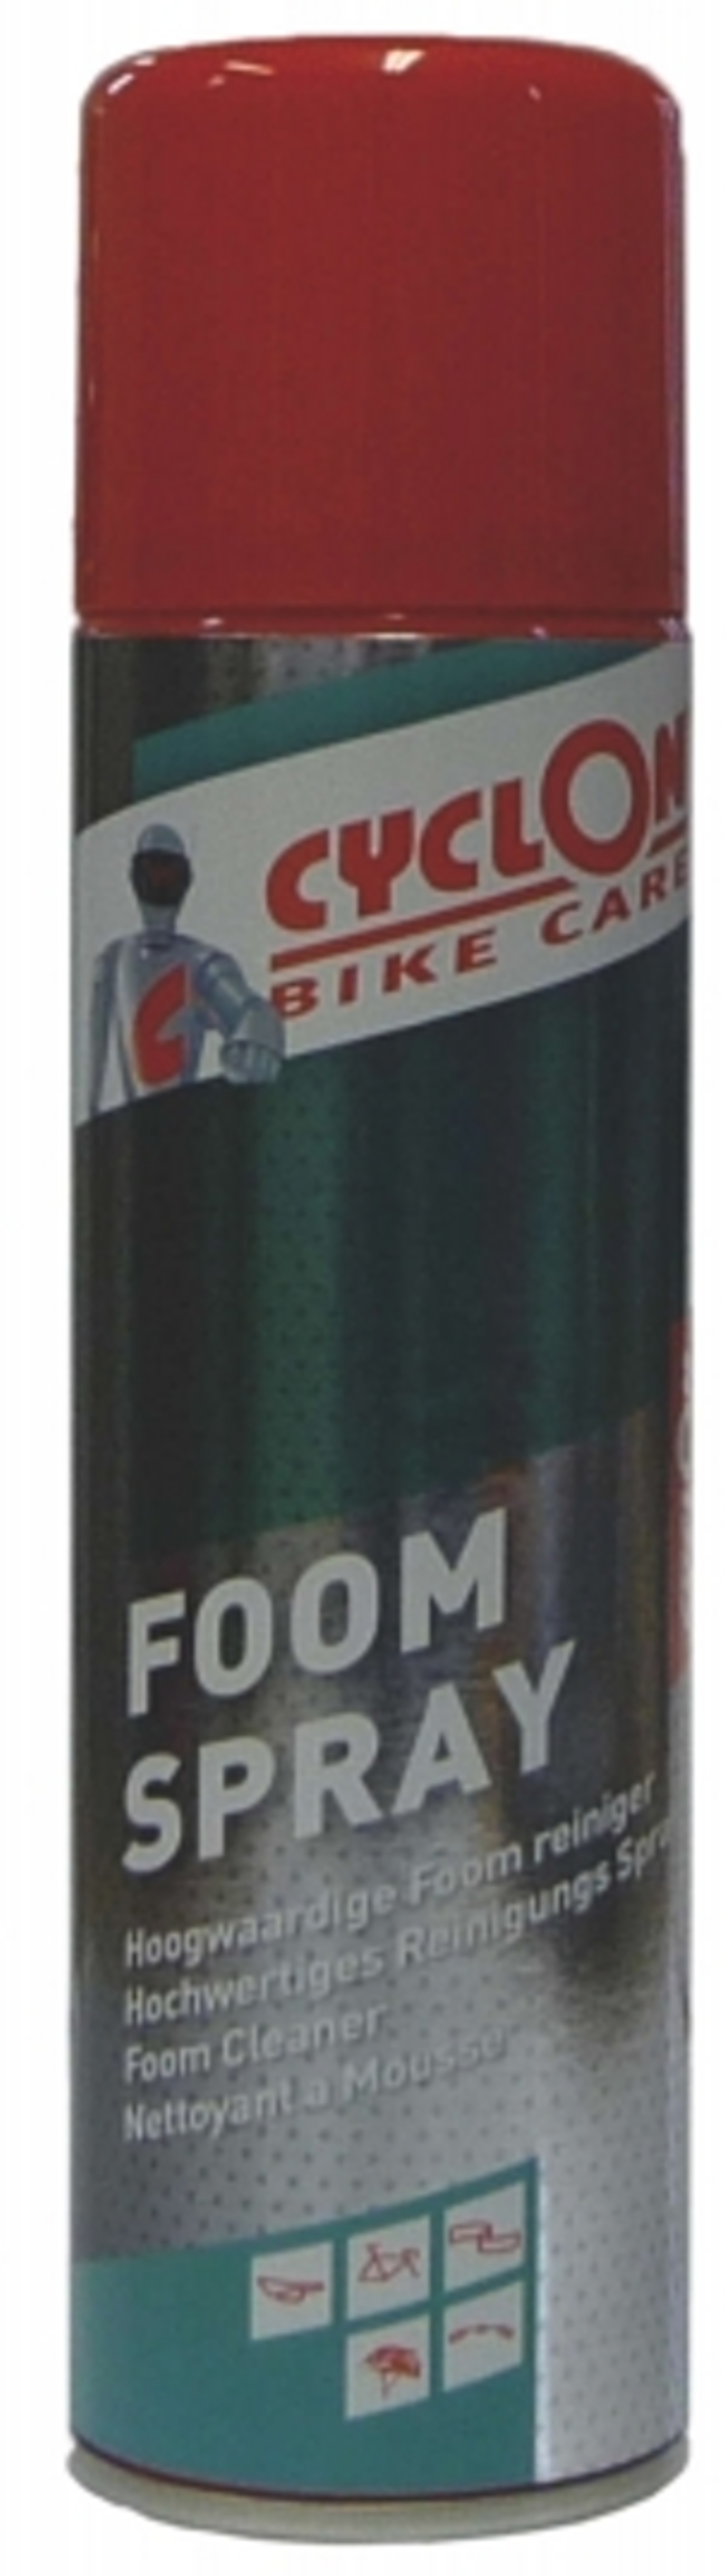 Cyclon Foom Spray 250ml